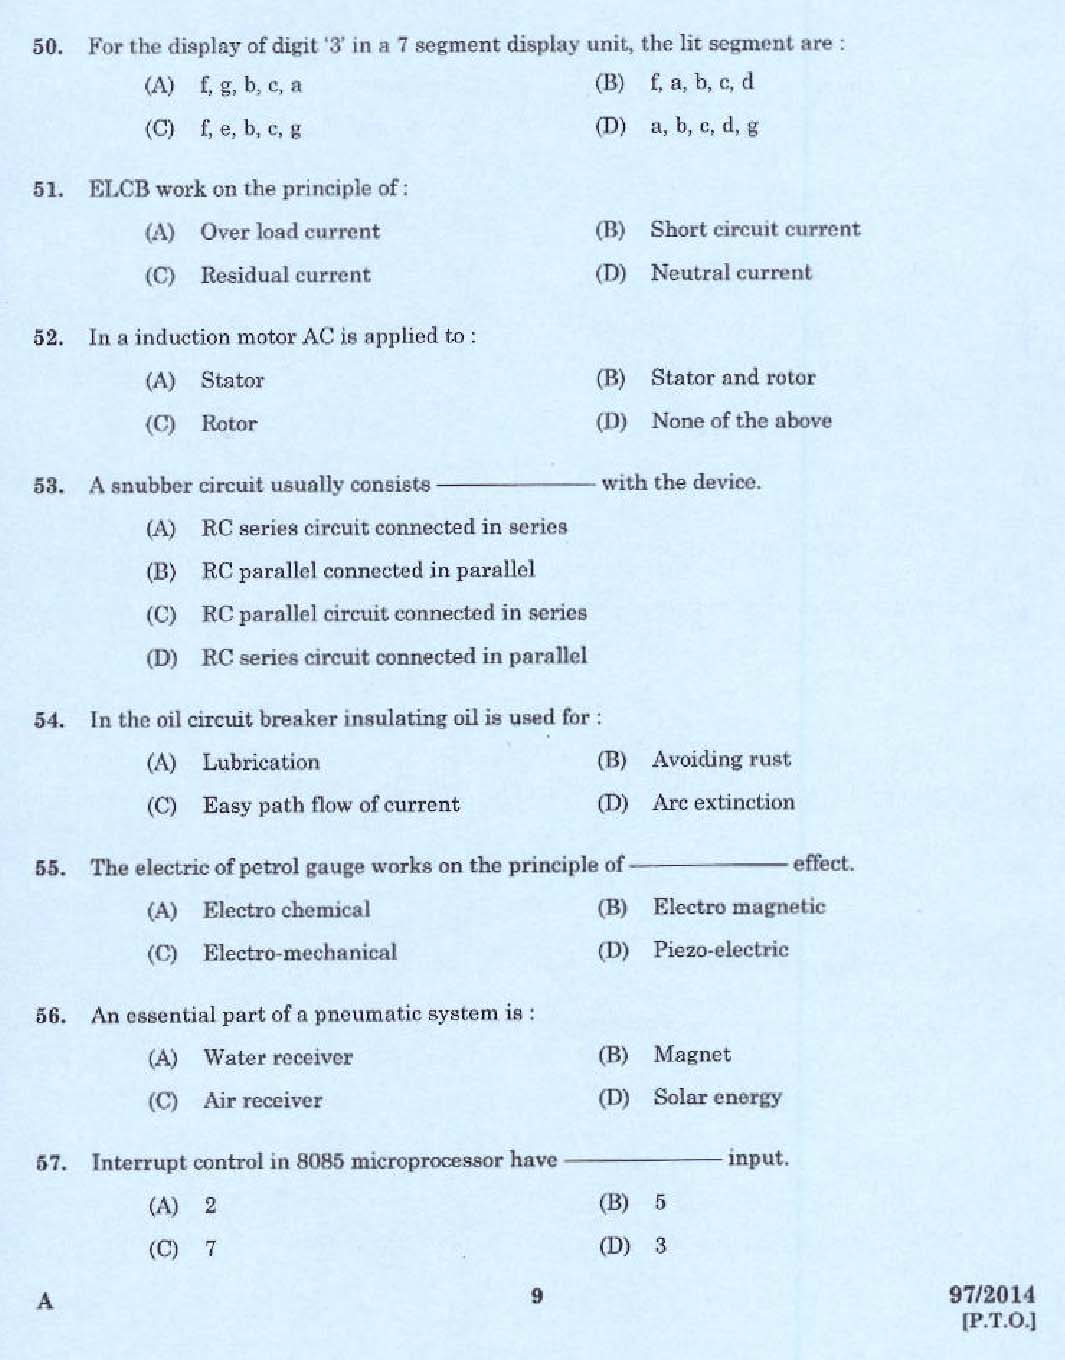 Kerala PSC Junior Instructor Exam Question Paper Code 972014 7